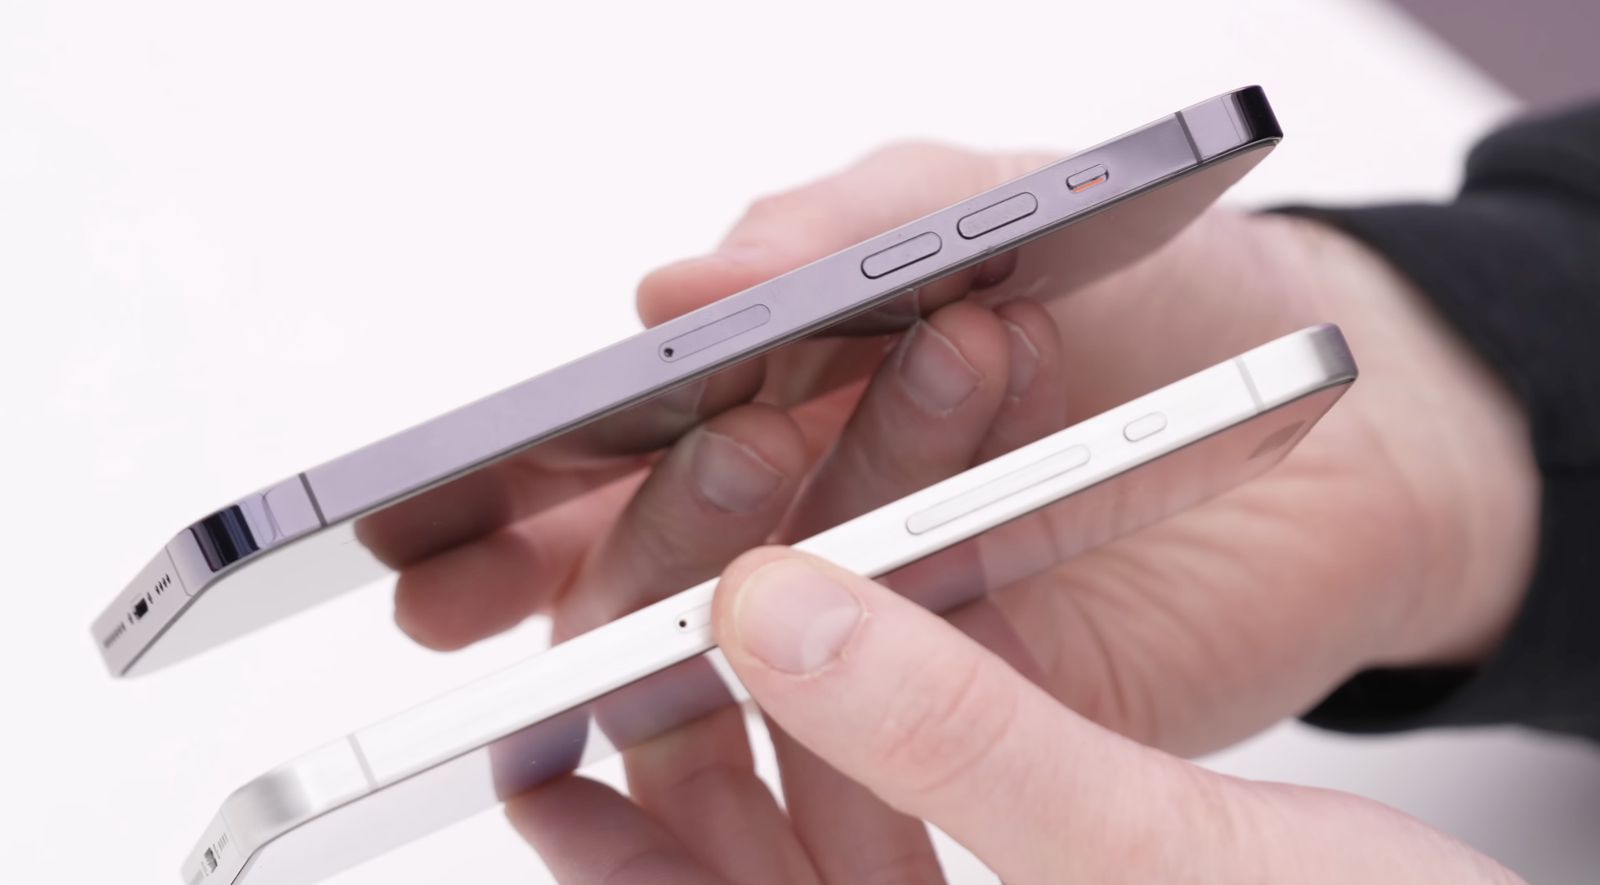 من iPhoneIslam.com، عقربان يقارنان بين سُمك وتصميم هاتفين ذكيين مختلفين على خلفية بيضاء، ويعرضان التحديثات لأسبوع 19-25 إبريل 2023.